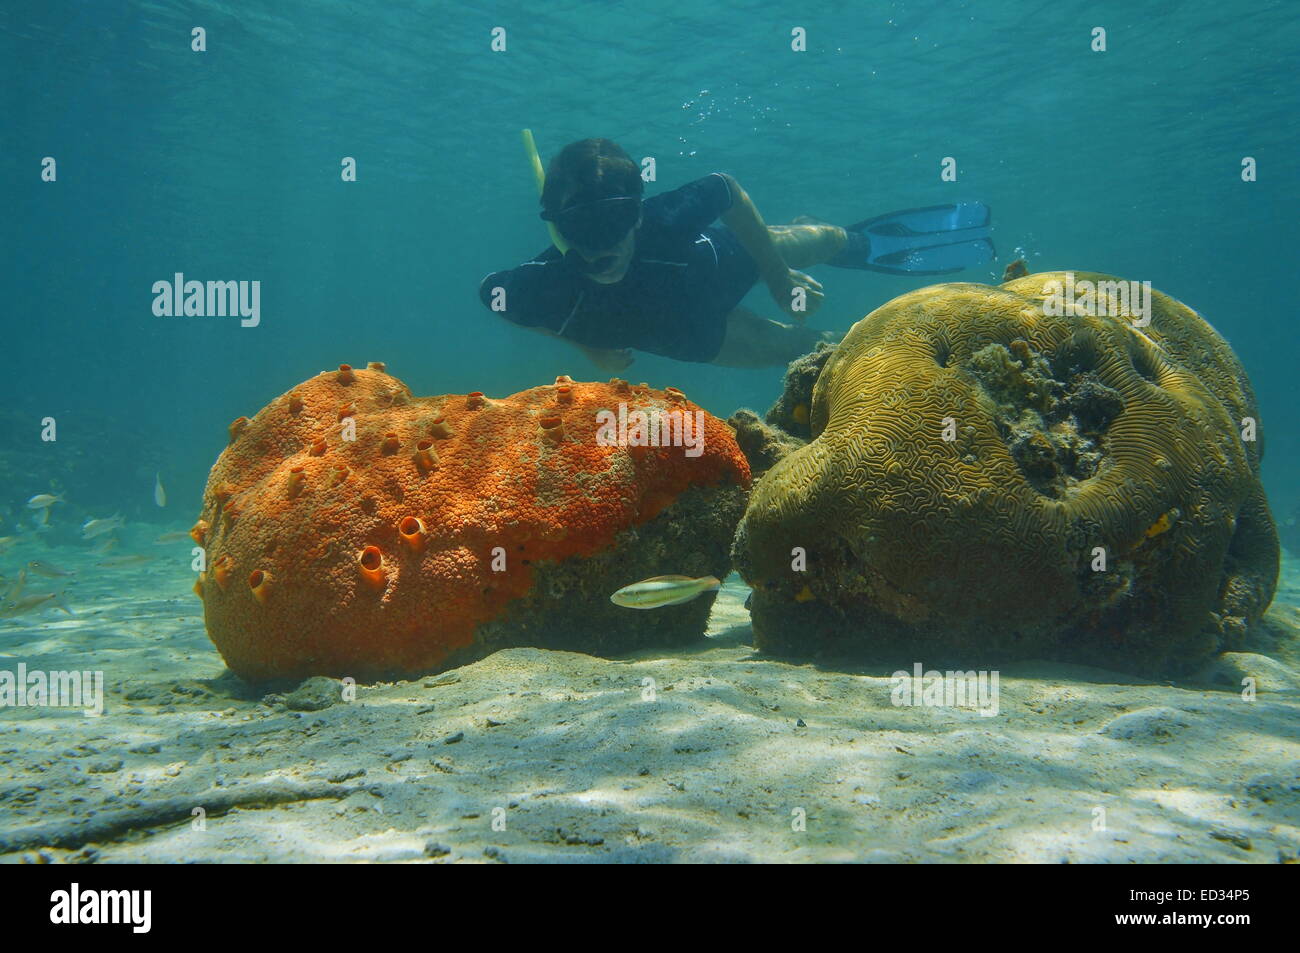 Man snorkeling underwater behind red encrusting sponge and brain coral, Caribbean sea Stock Photo